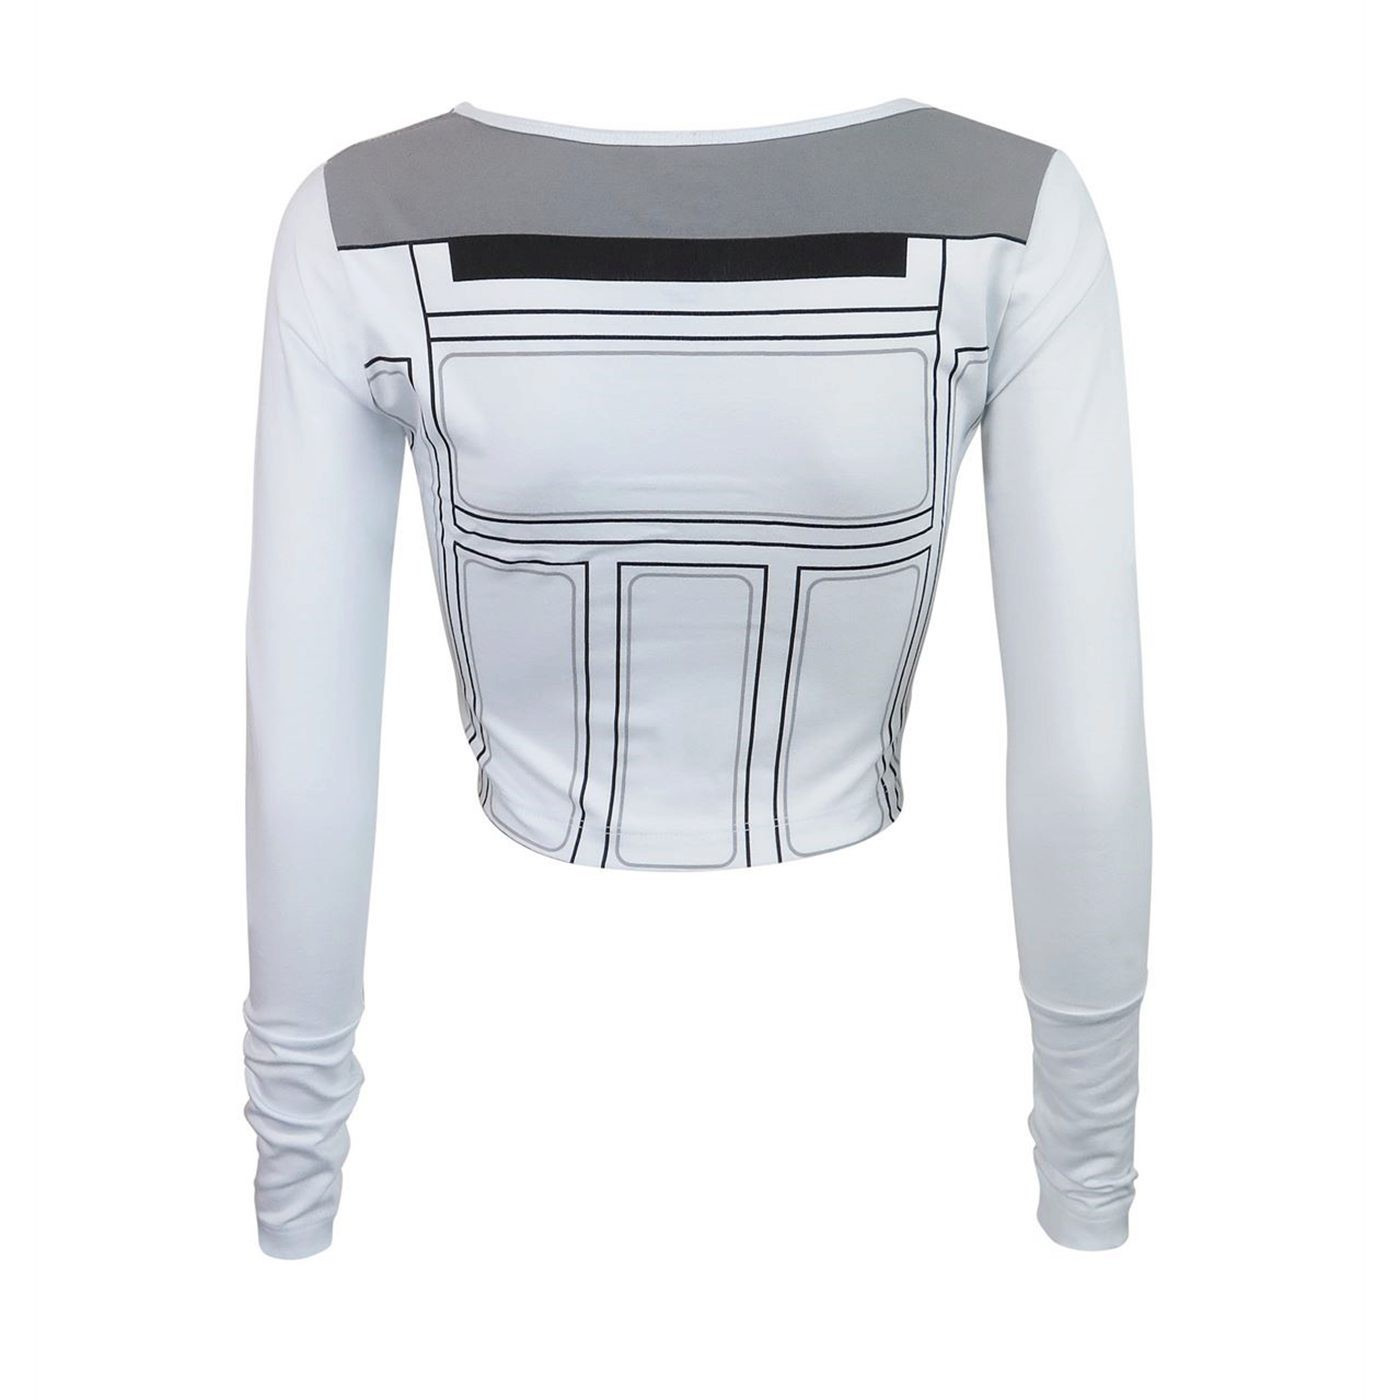 Star Wars R2D2 Long Sleeve Women's Crop Top T-Shirt